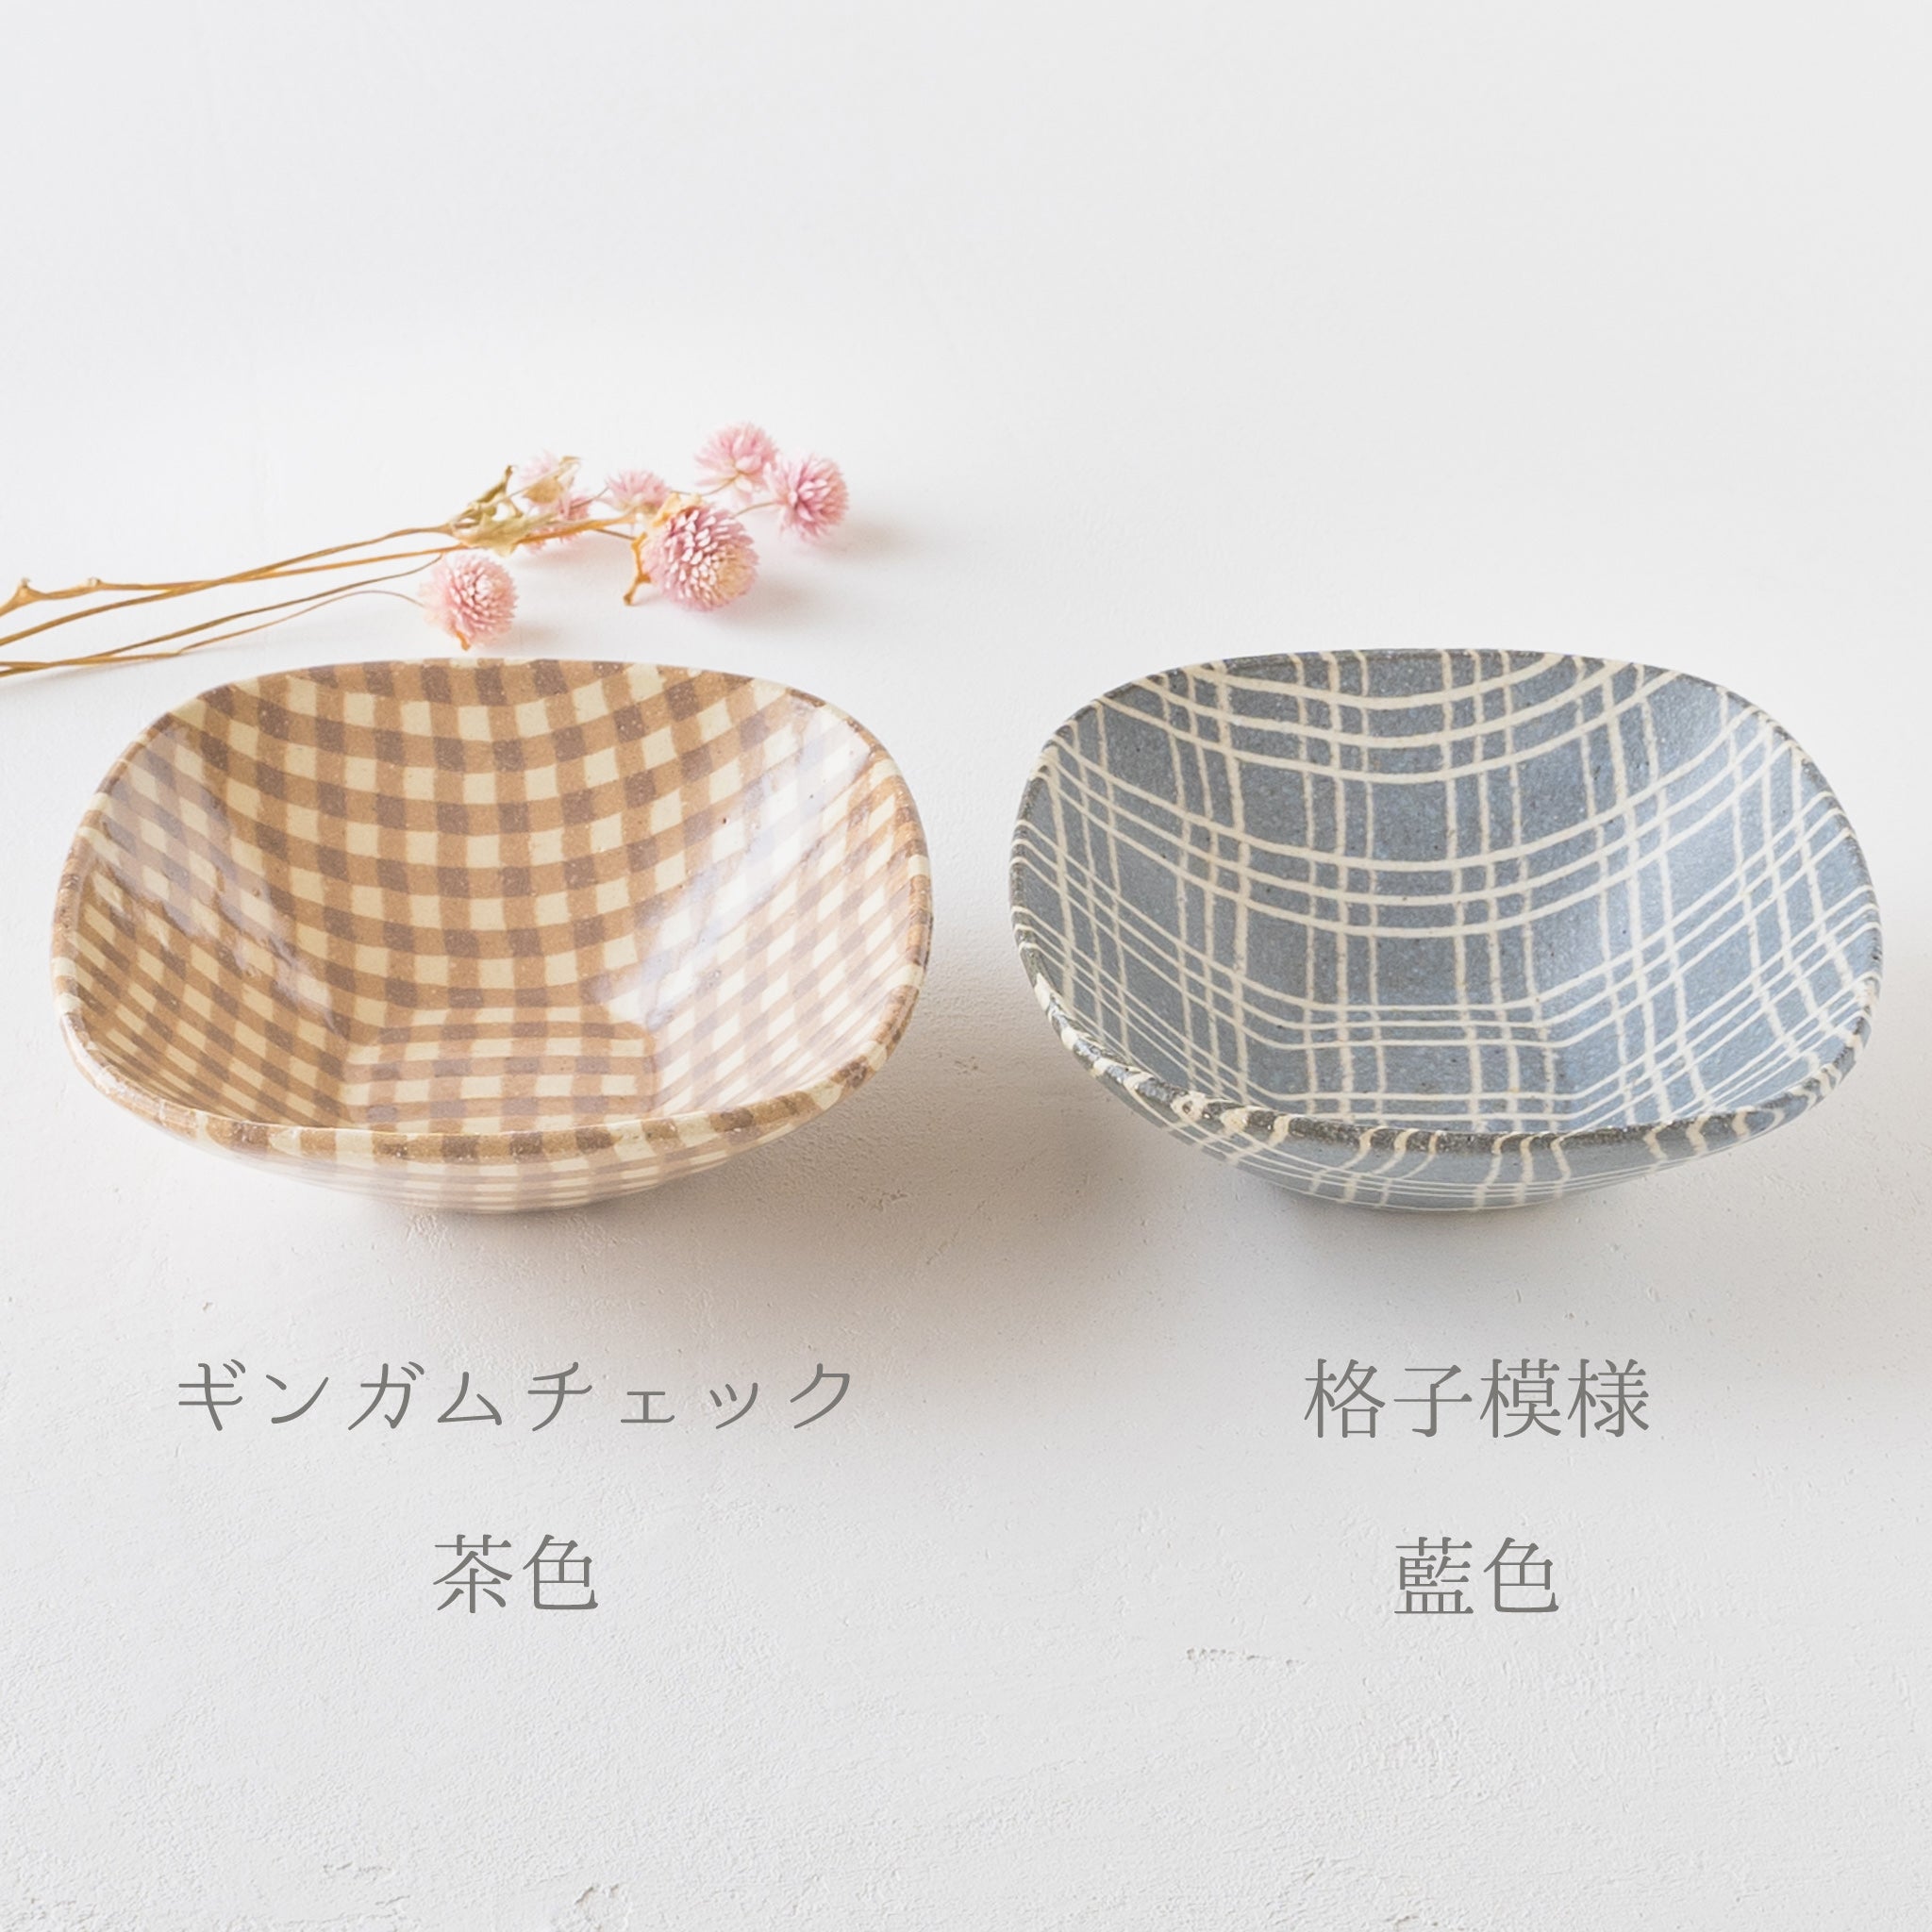 Hanako Sakashita's corner bowl with a stylish and cute kneaded pattern